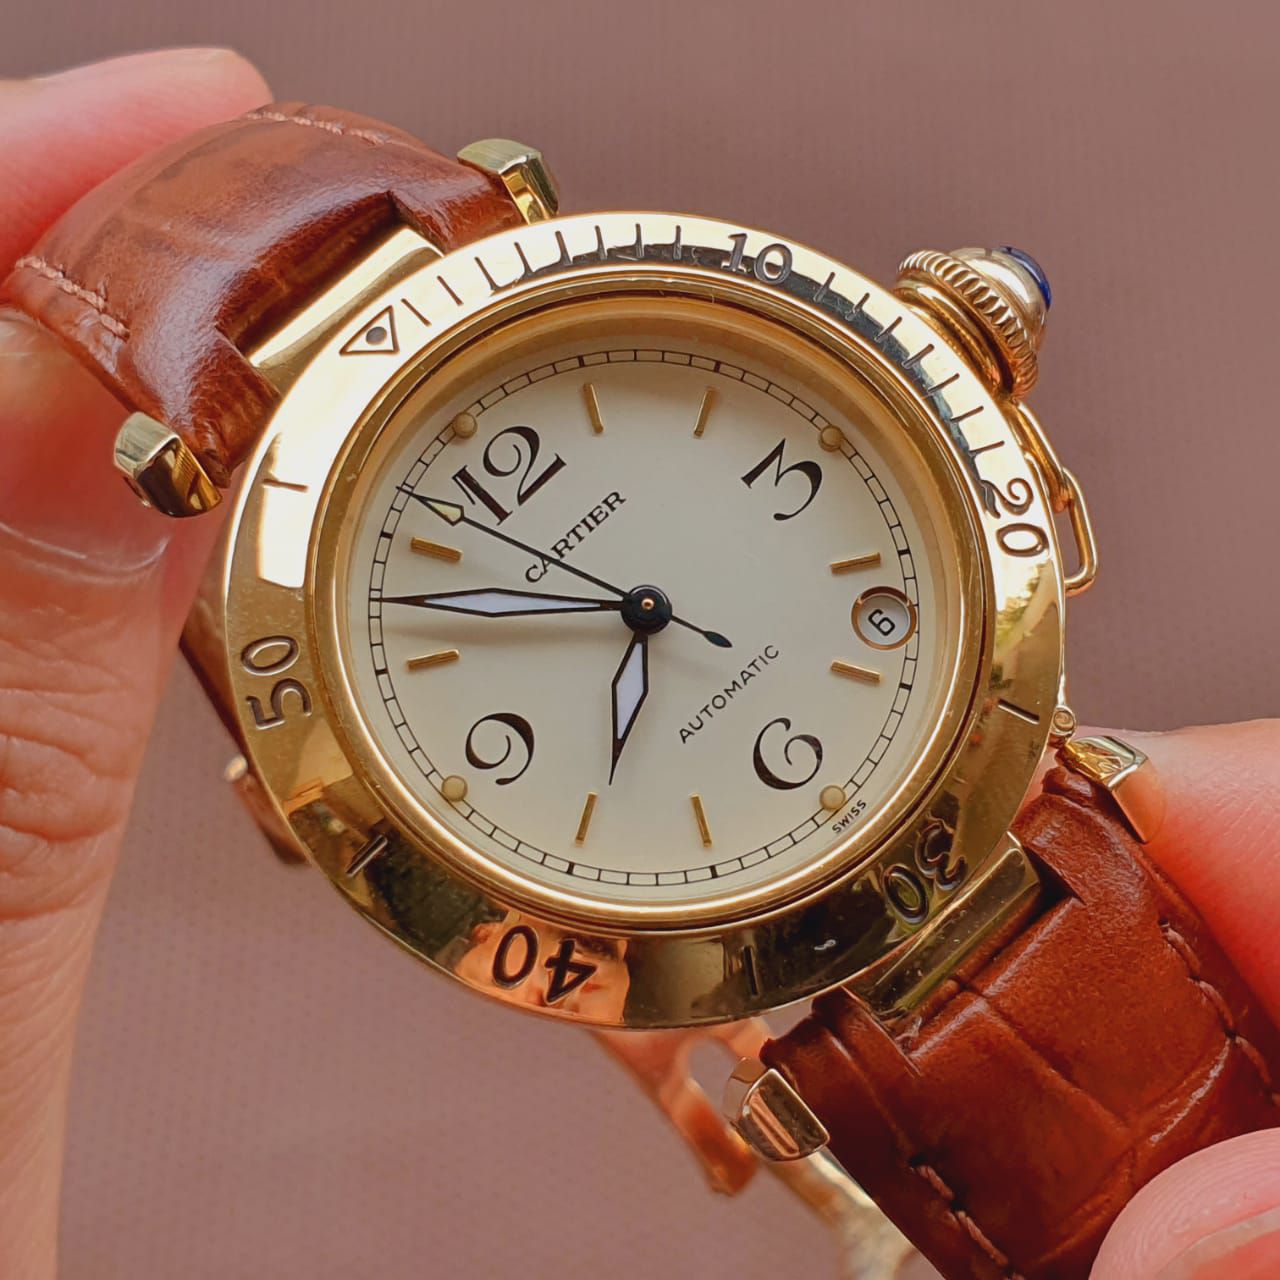 18kt OURO MACIÇO Relógio Cartier Pasha AUTOMÁTICO SUÍÇO Ref 1989 -  Altarelojoria relógios originais invicta orient casio e muito mais.